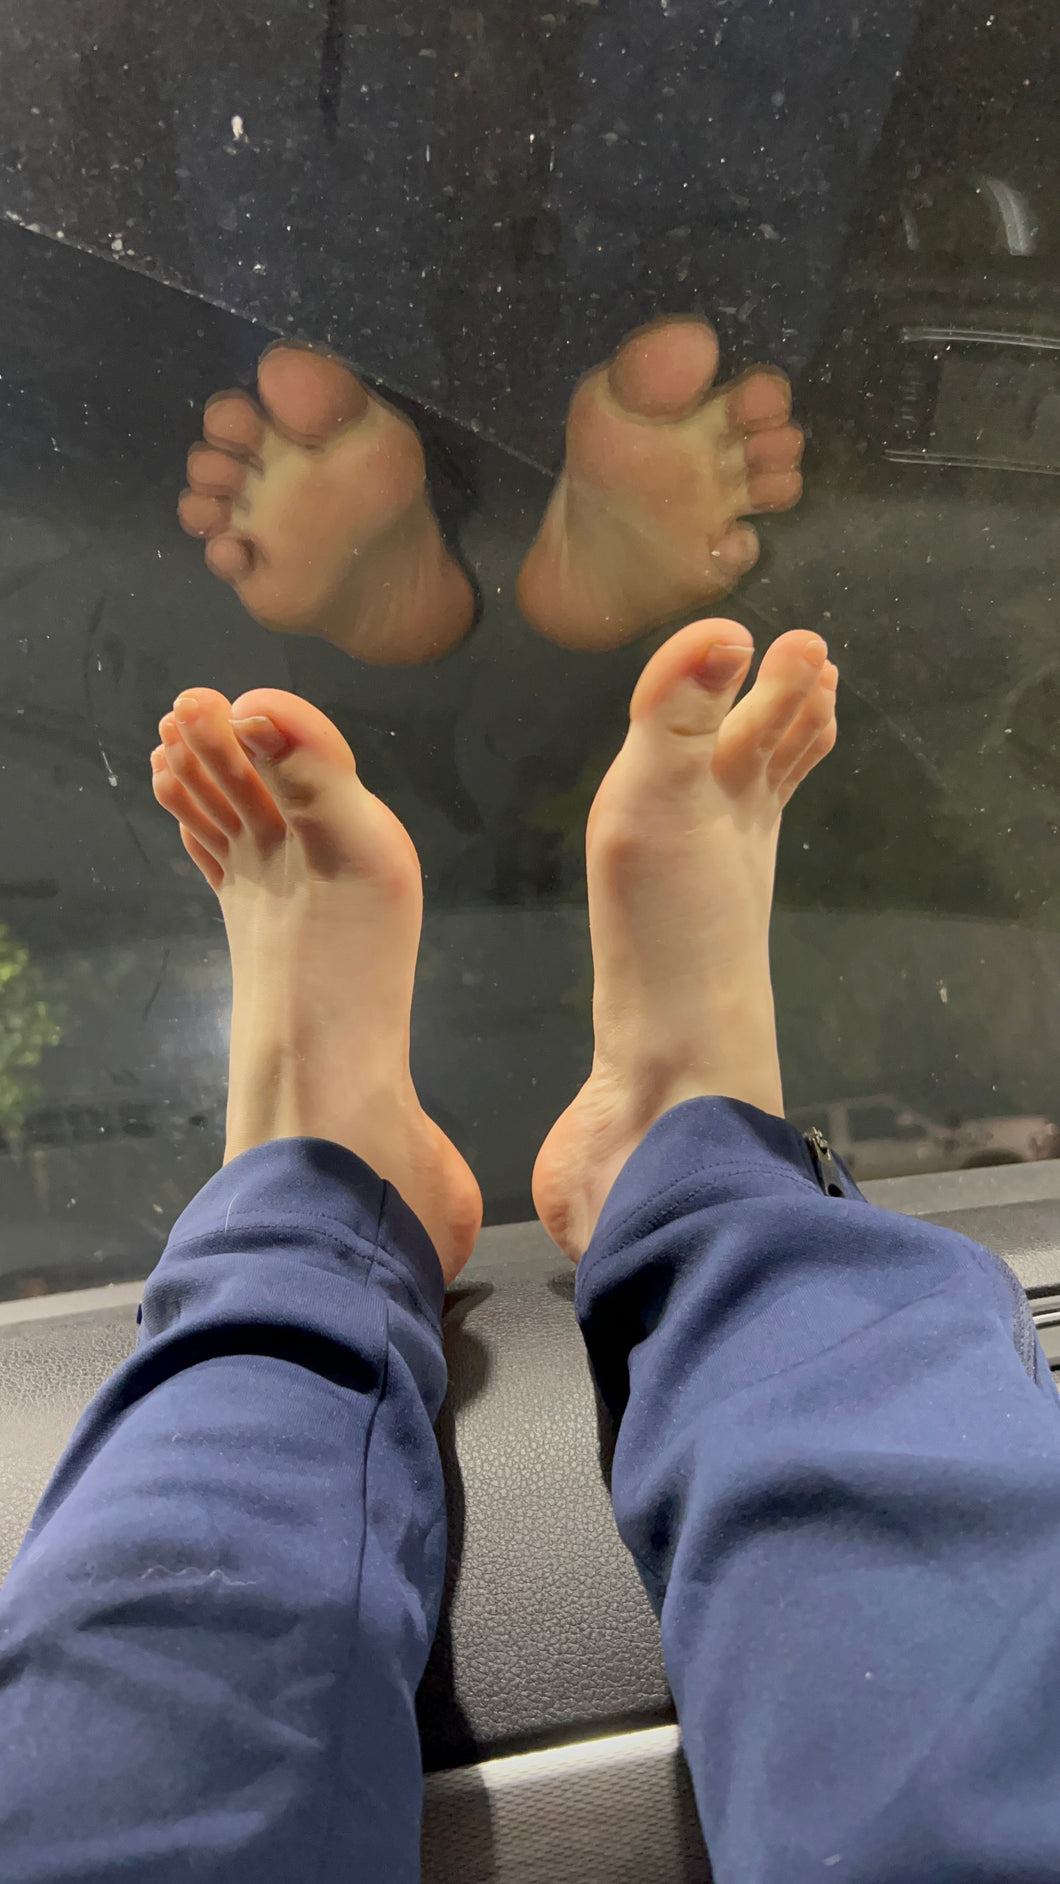 Sativas feet in the car 1m